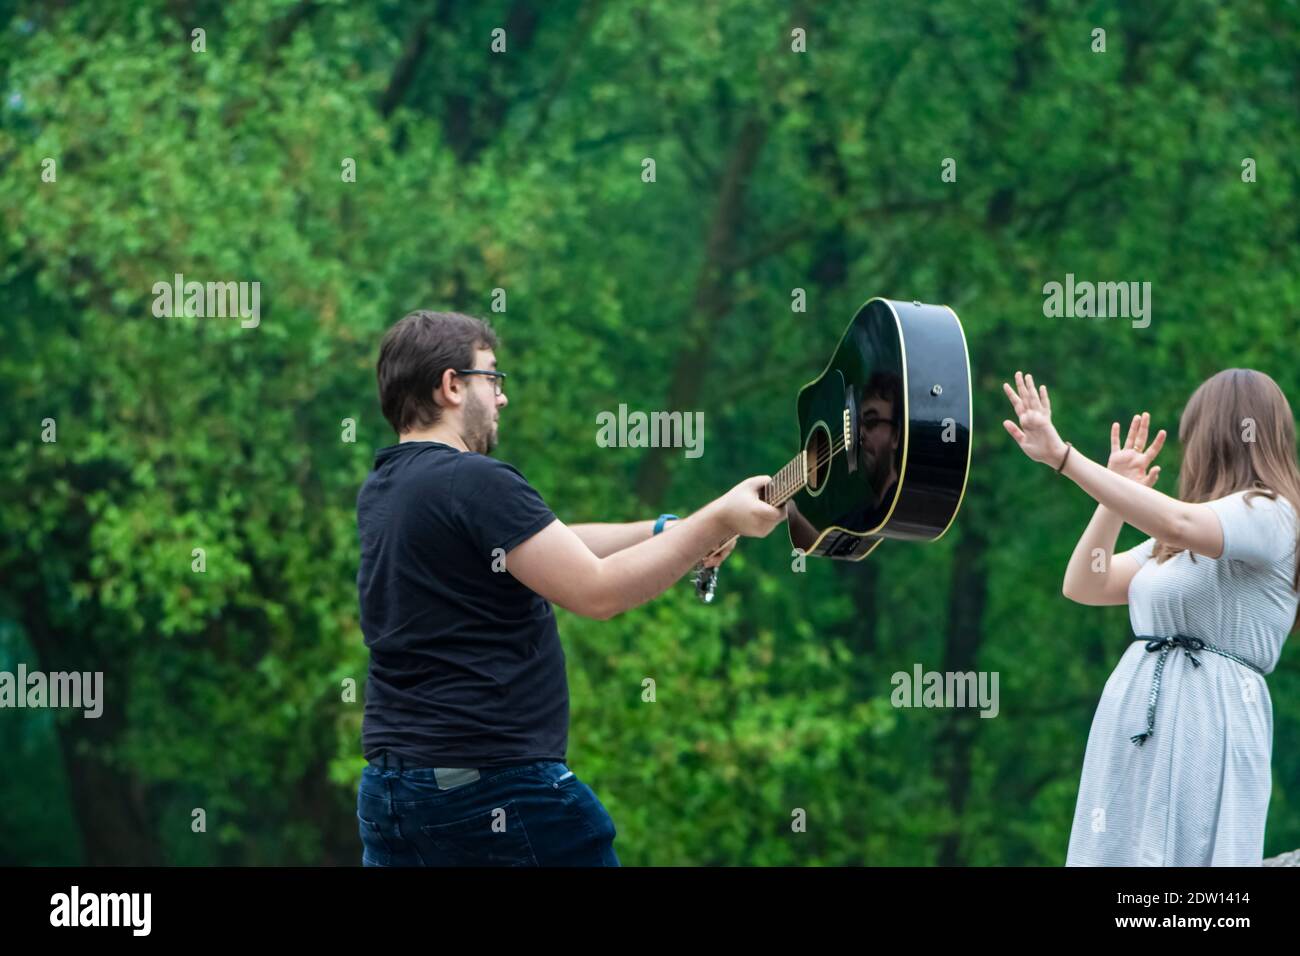 Mann schlägt die Frau mit Gitarre im Freien Stockfoto